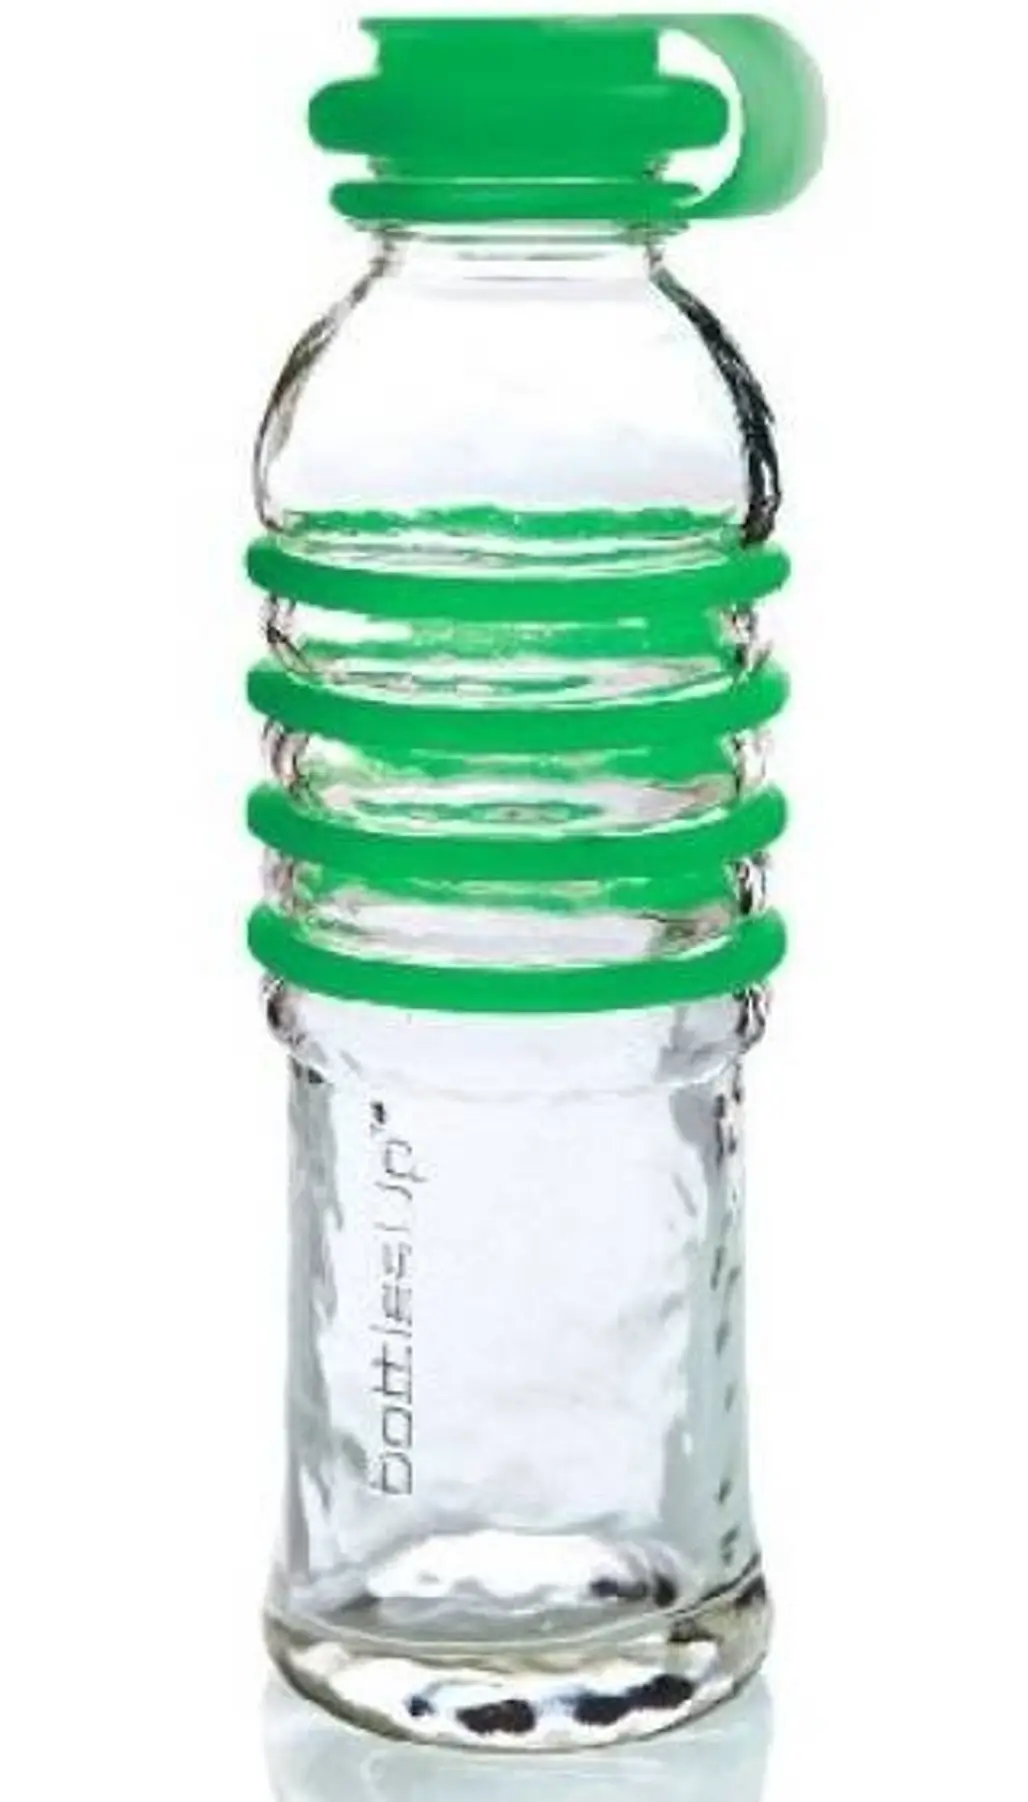 BottlesUp Reusable Glass Water Bottle